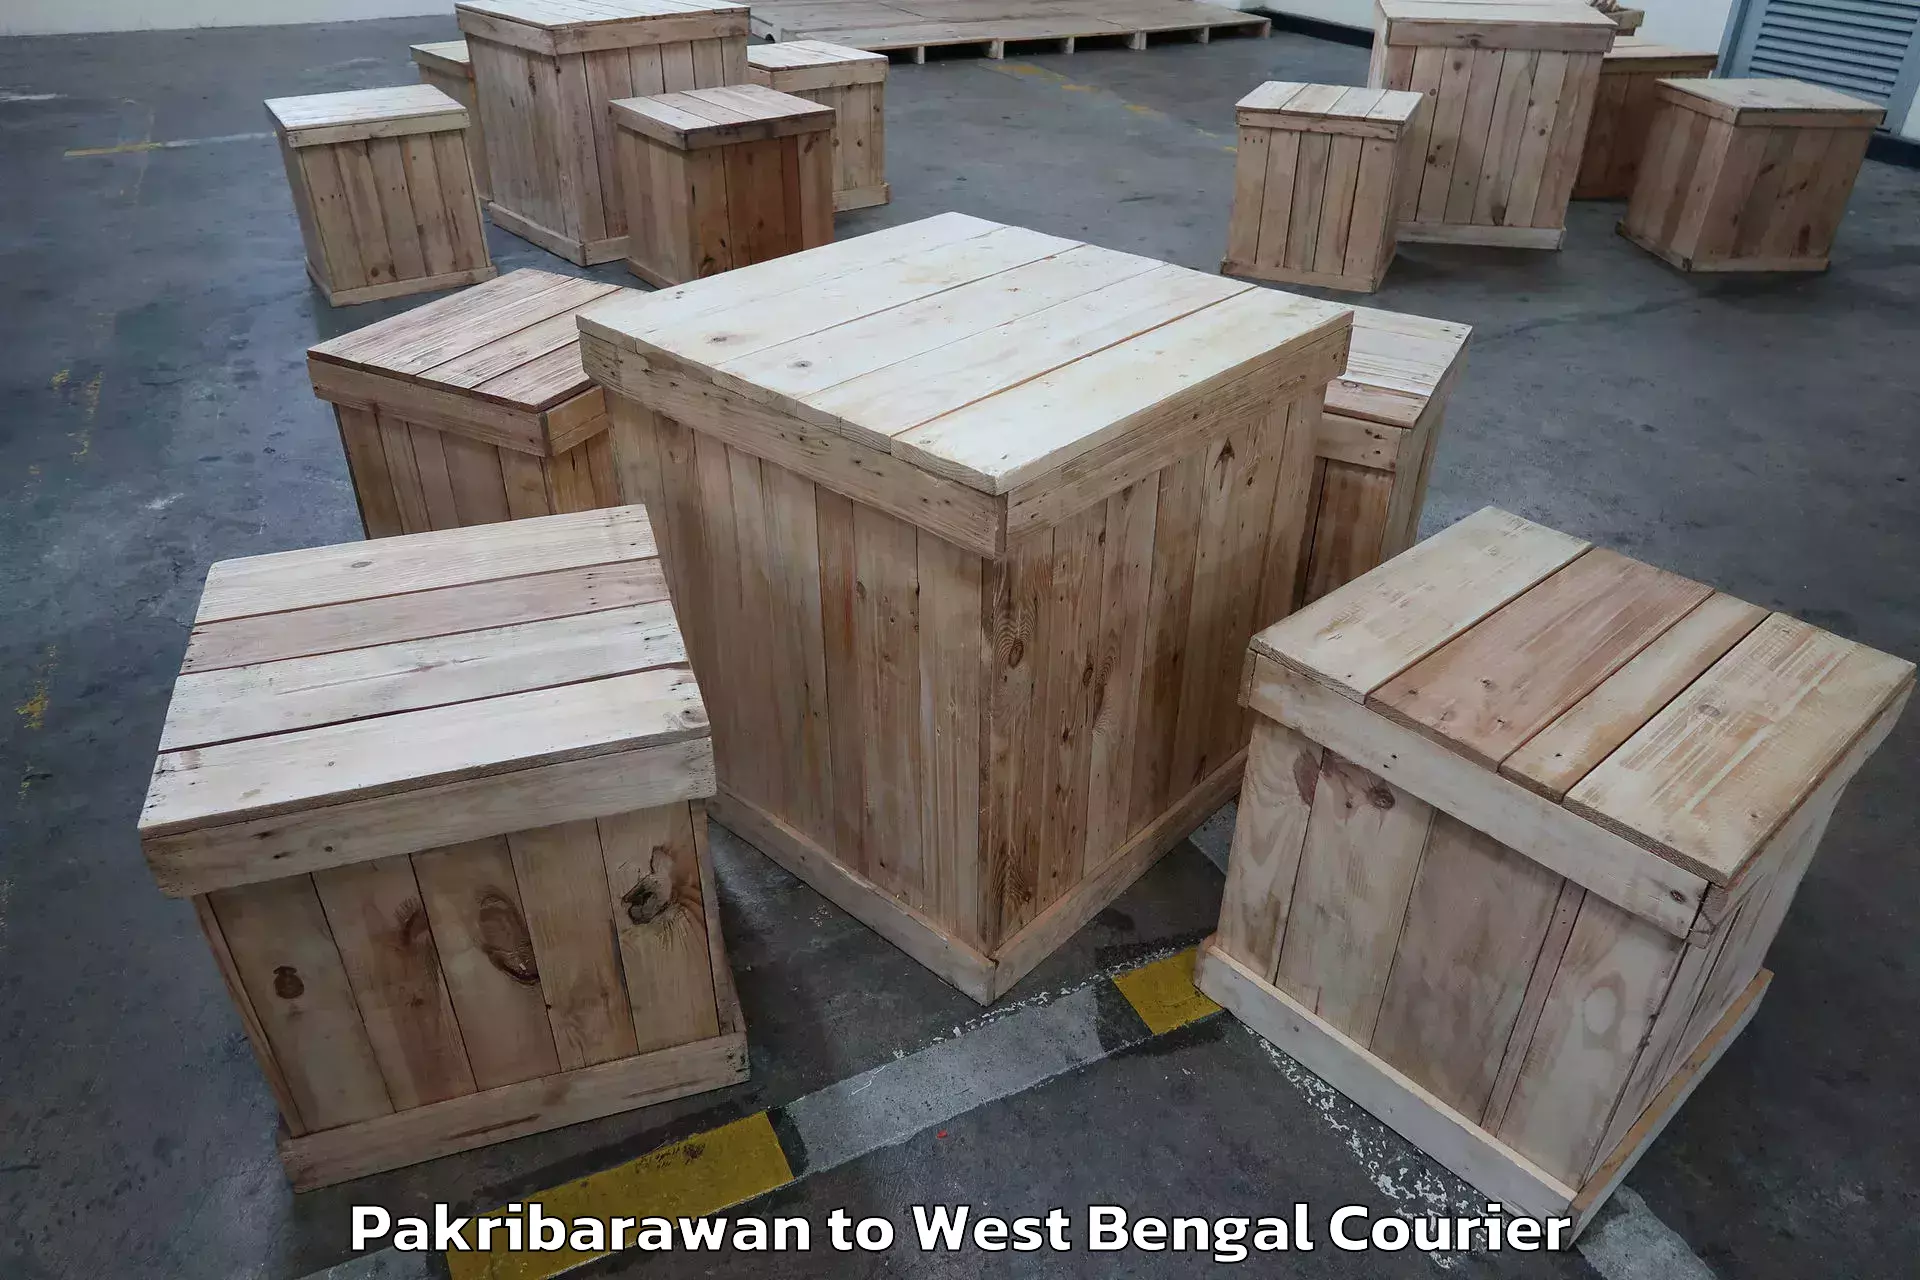 Flexible moving solutions Pakribarawan to Kolkata Port